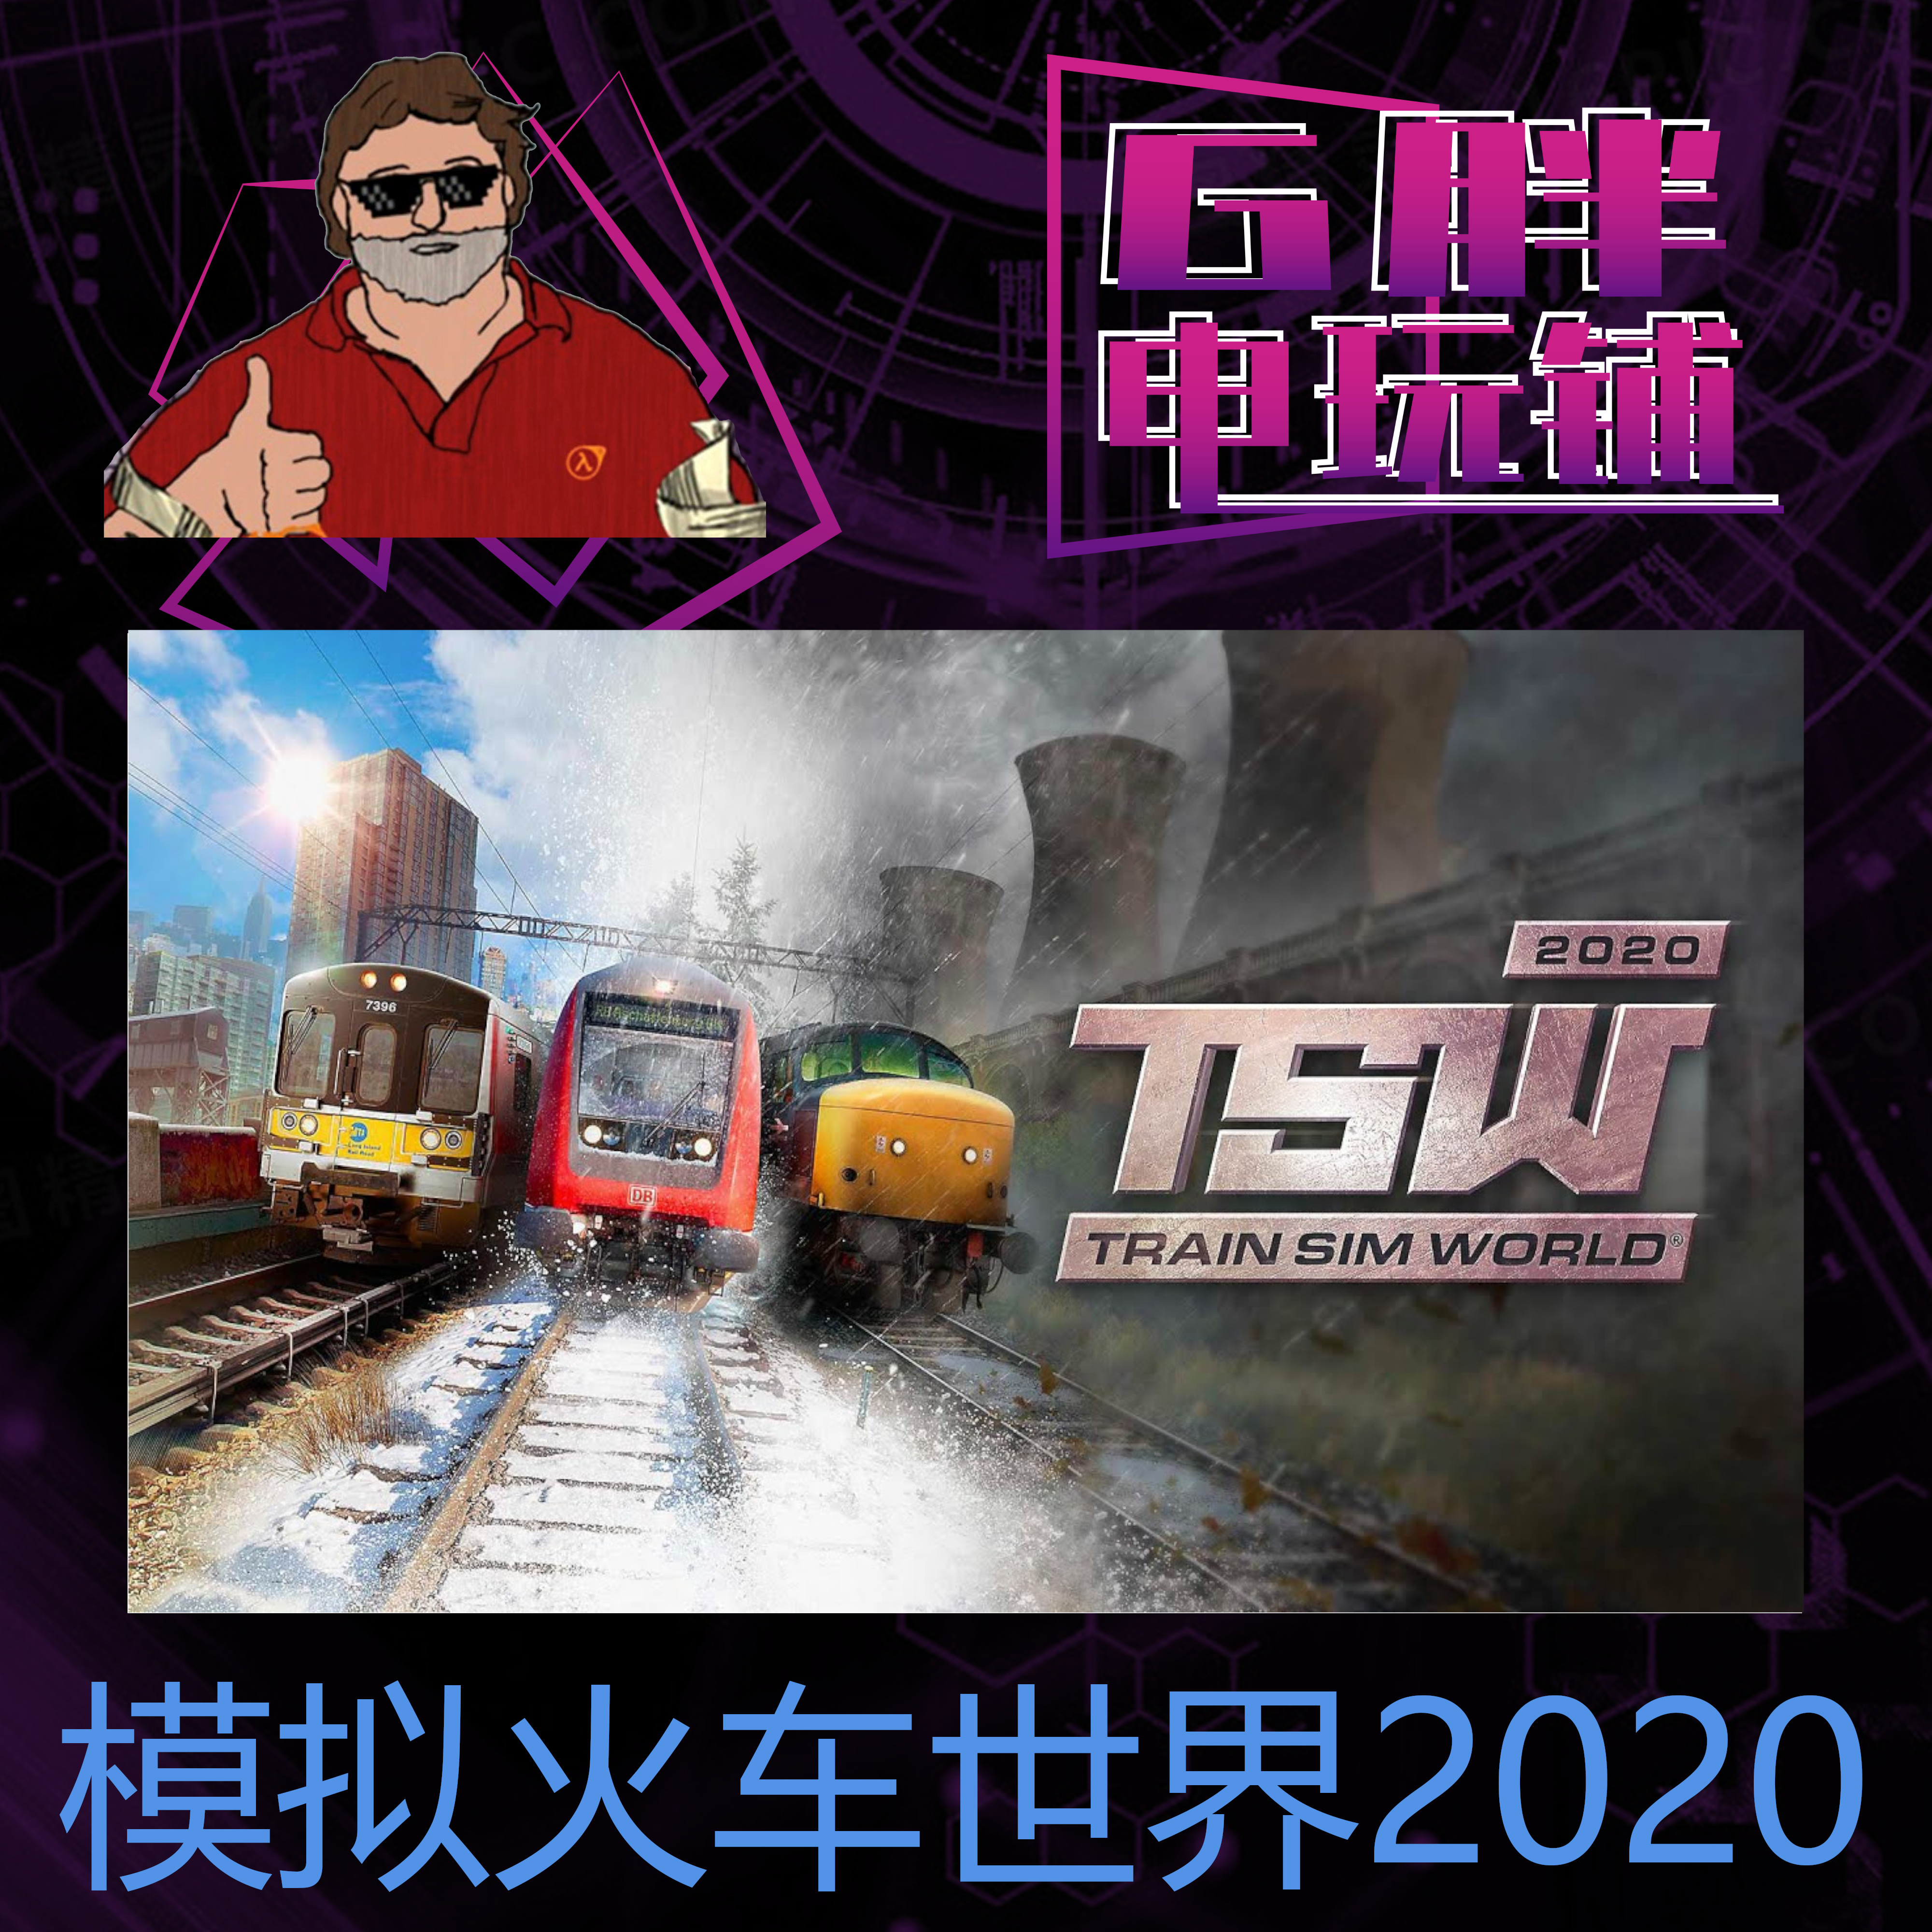 Steam正版 模拟火车世界 2020 Train Sim World 2020 绝版 创始人